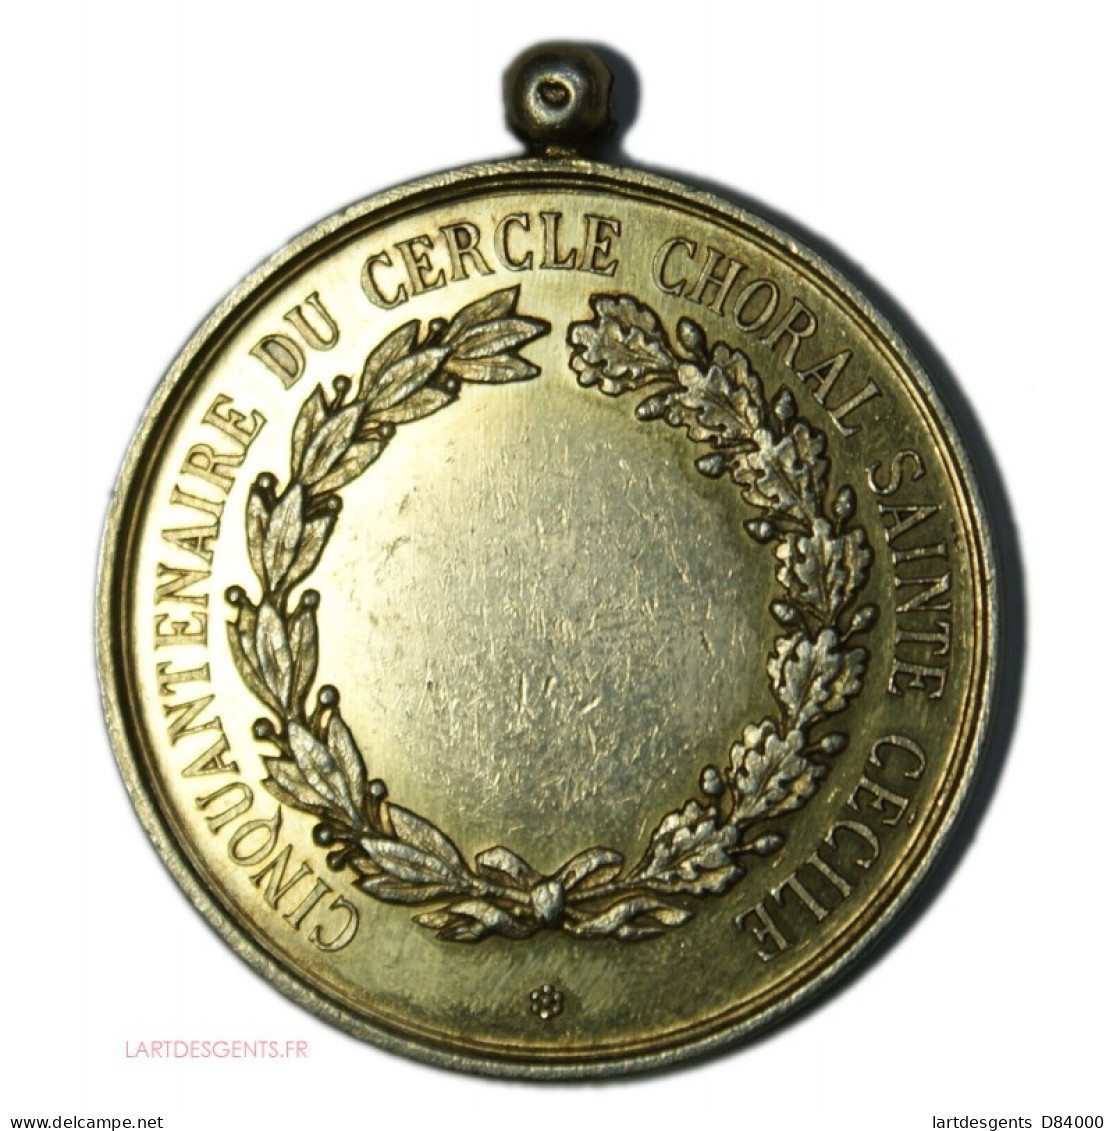 Médaille Argent Cinquantenaire Du Cercle Choral ST CECILE 1892, CONCOURS MUSICAL - Royaux / De Noblesse